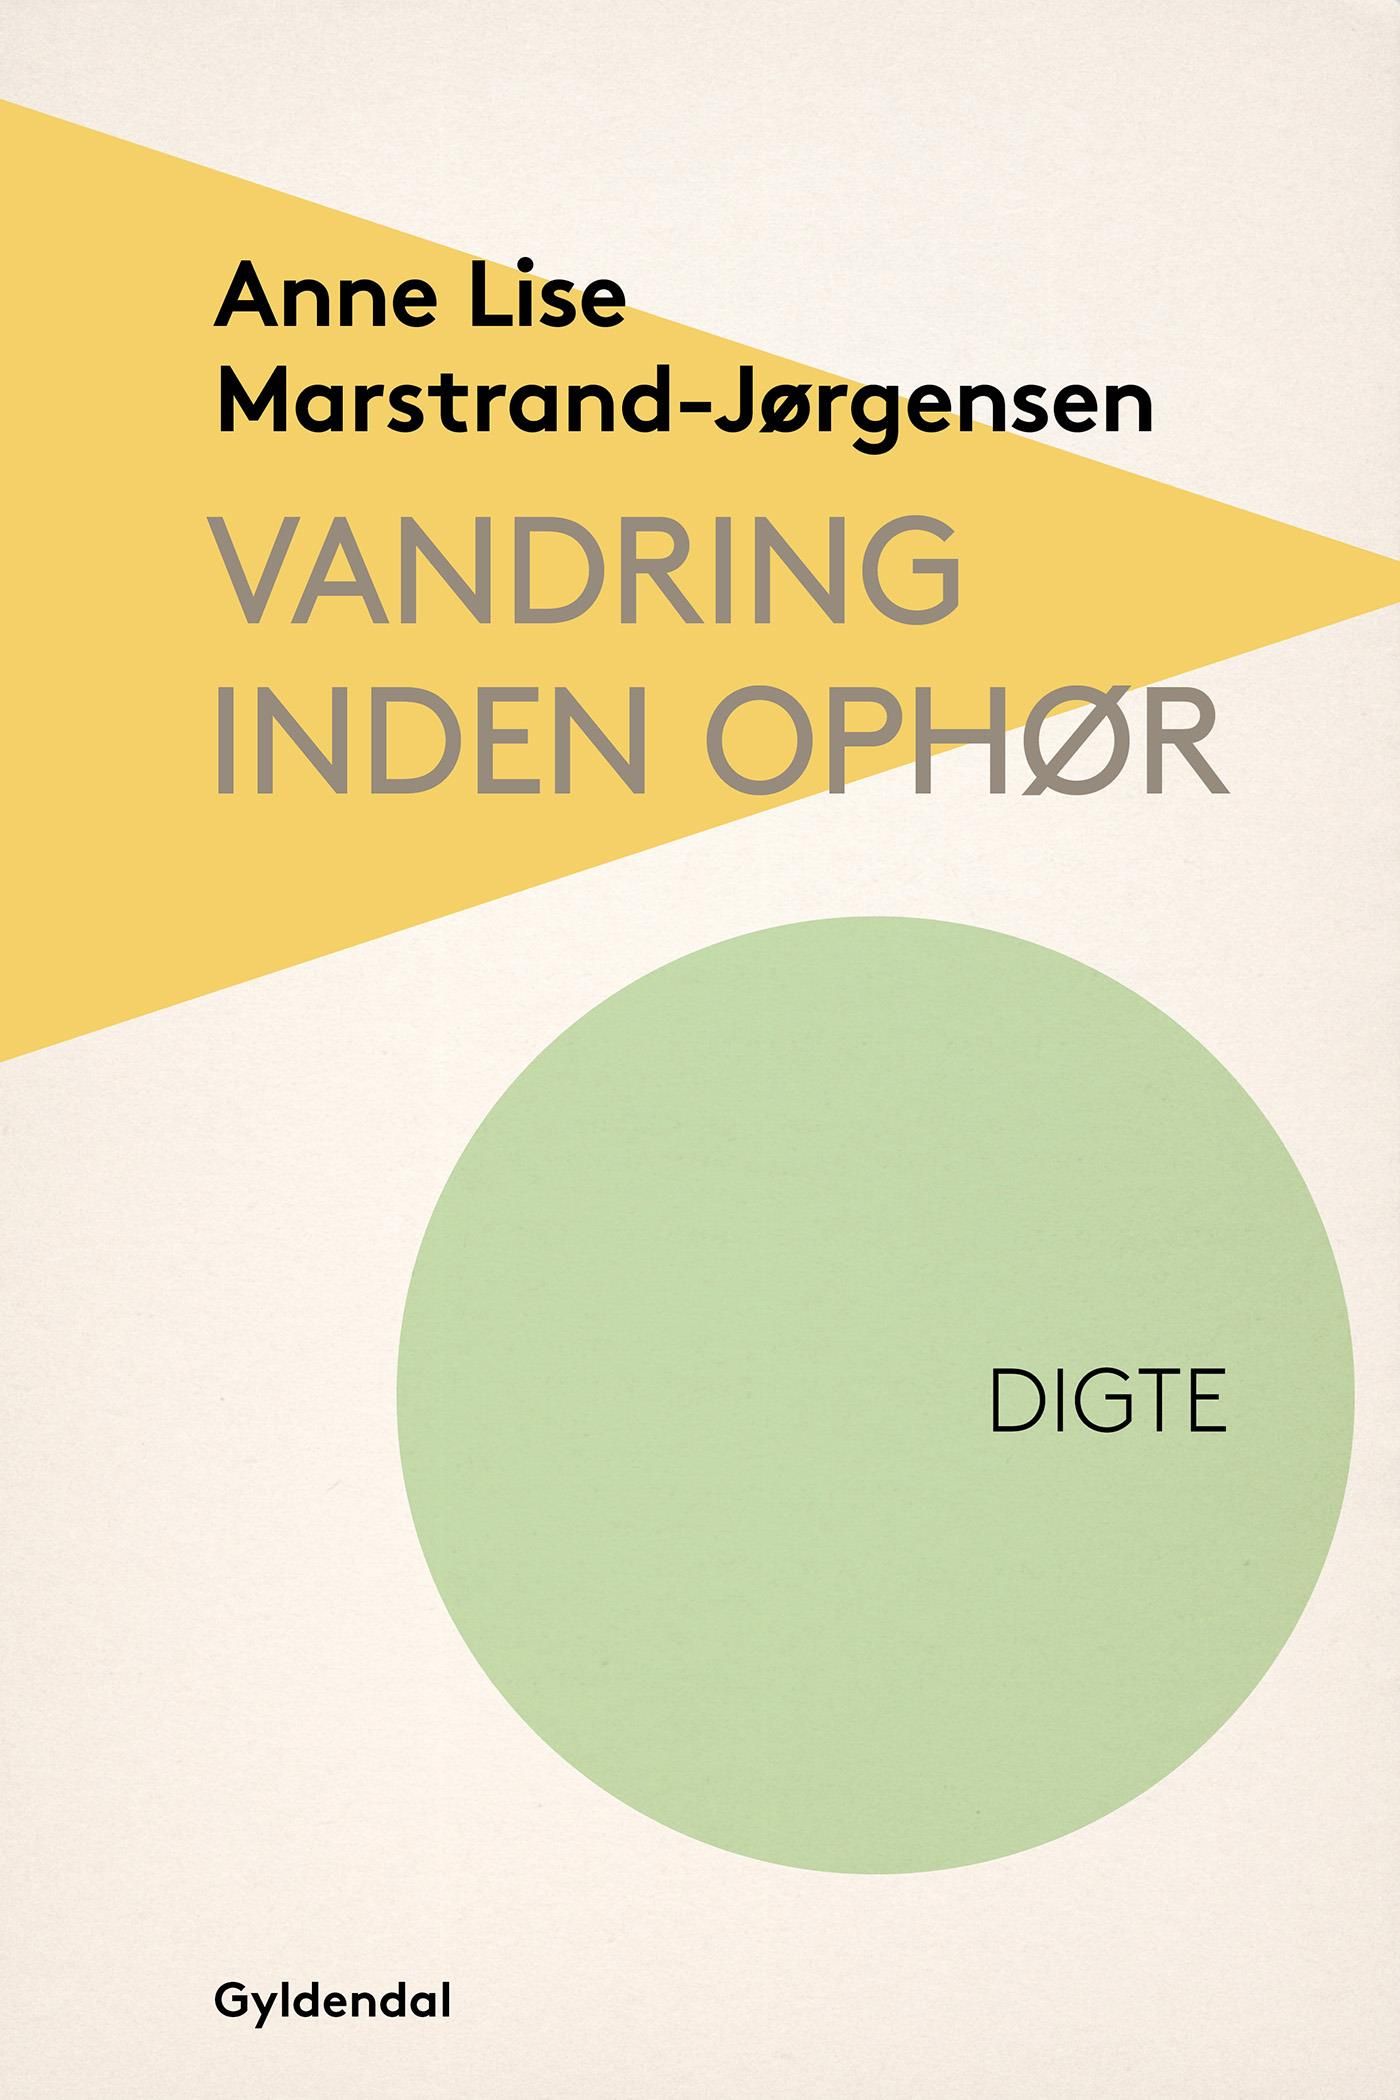 Vandring inden ophør, e-bok av Anne Lise Marstrand-Jørgensen